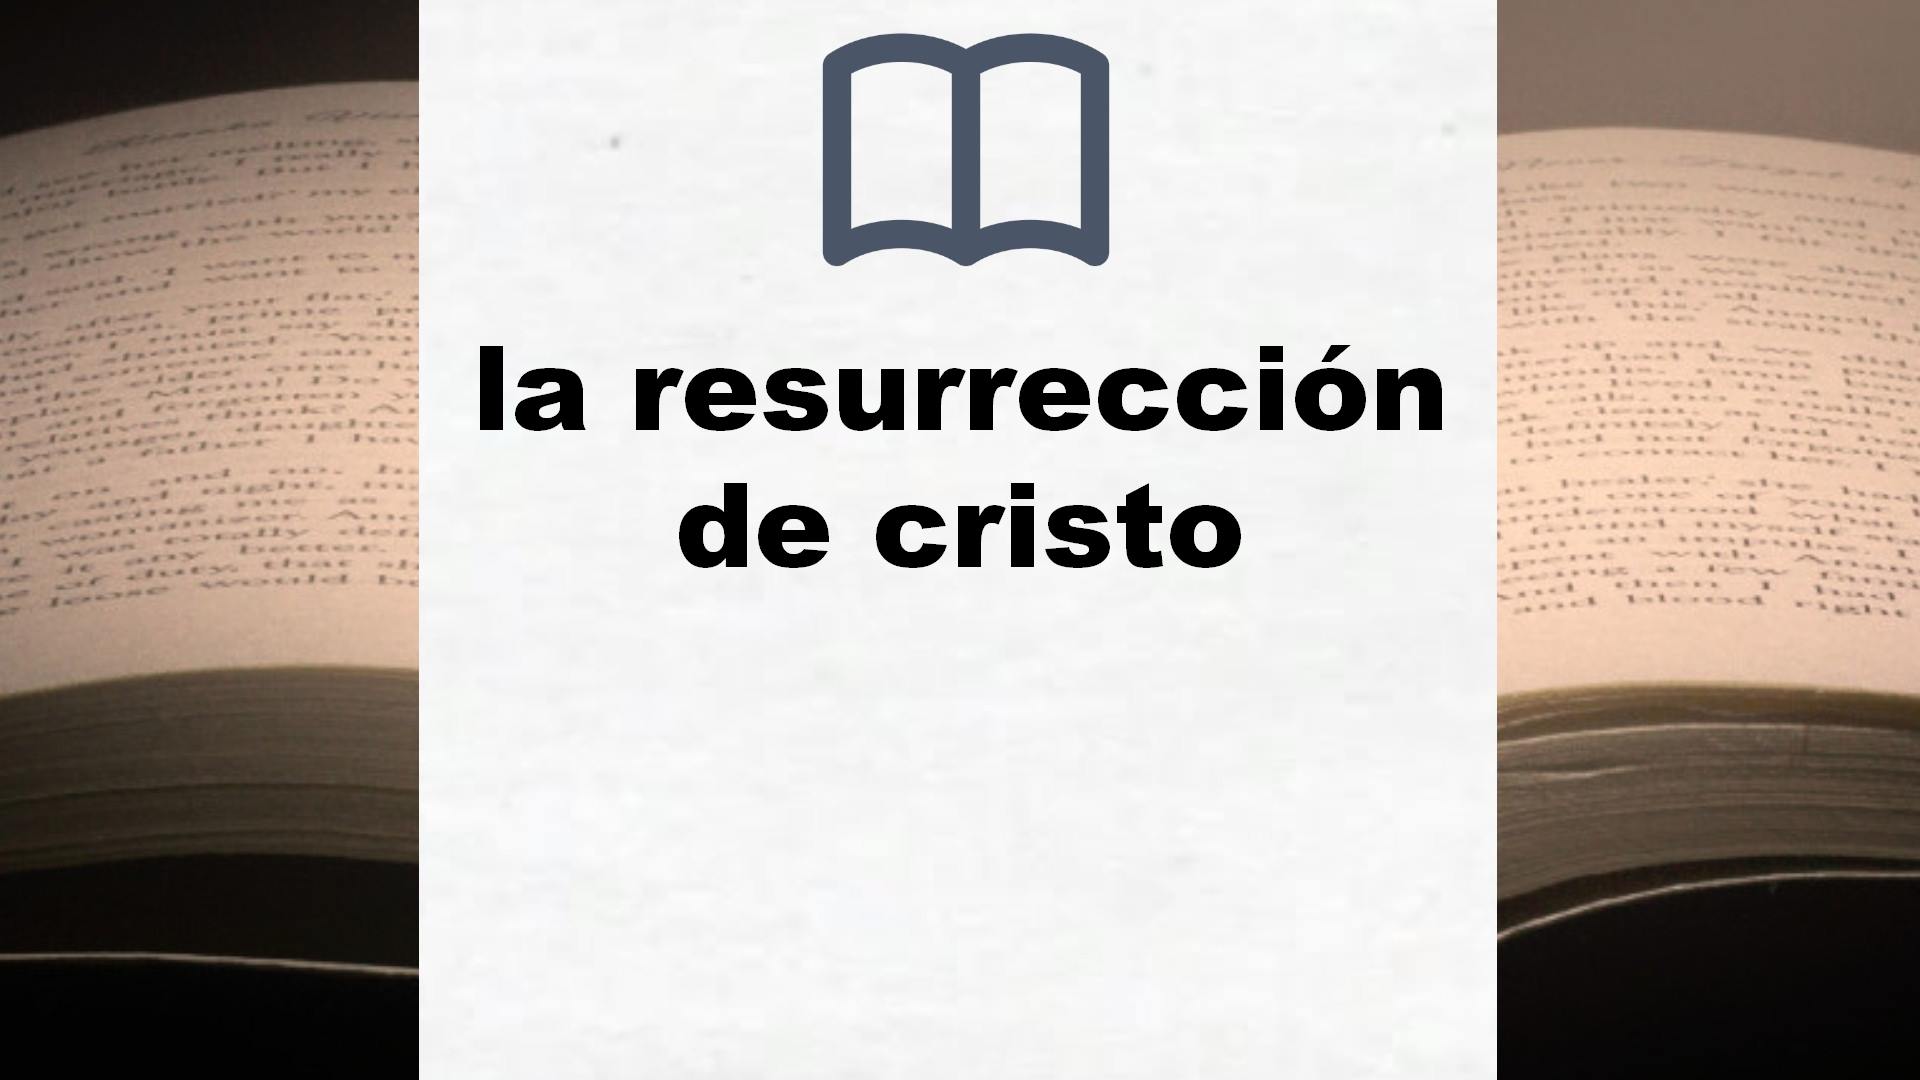 Libros sobre la resurrección de cristo